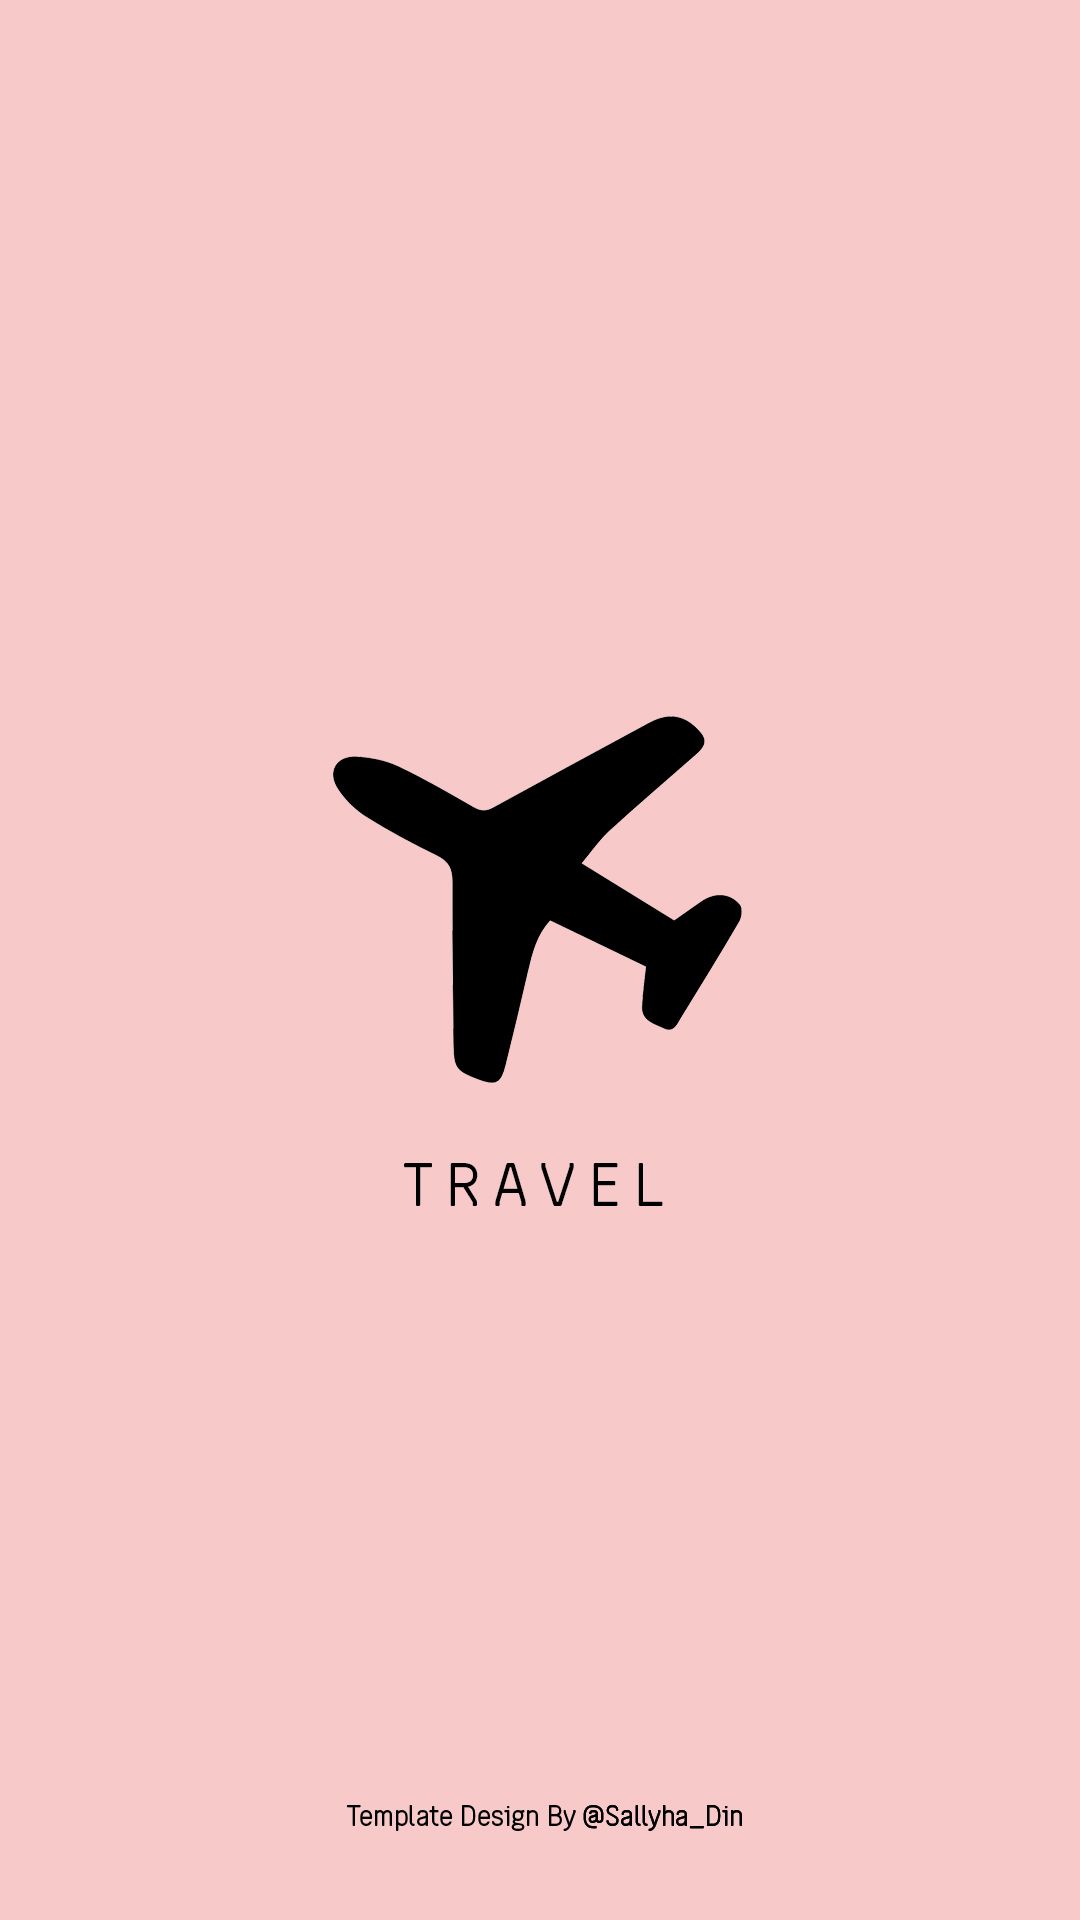 instagram highlight cover travel black